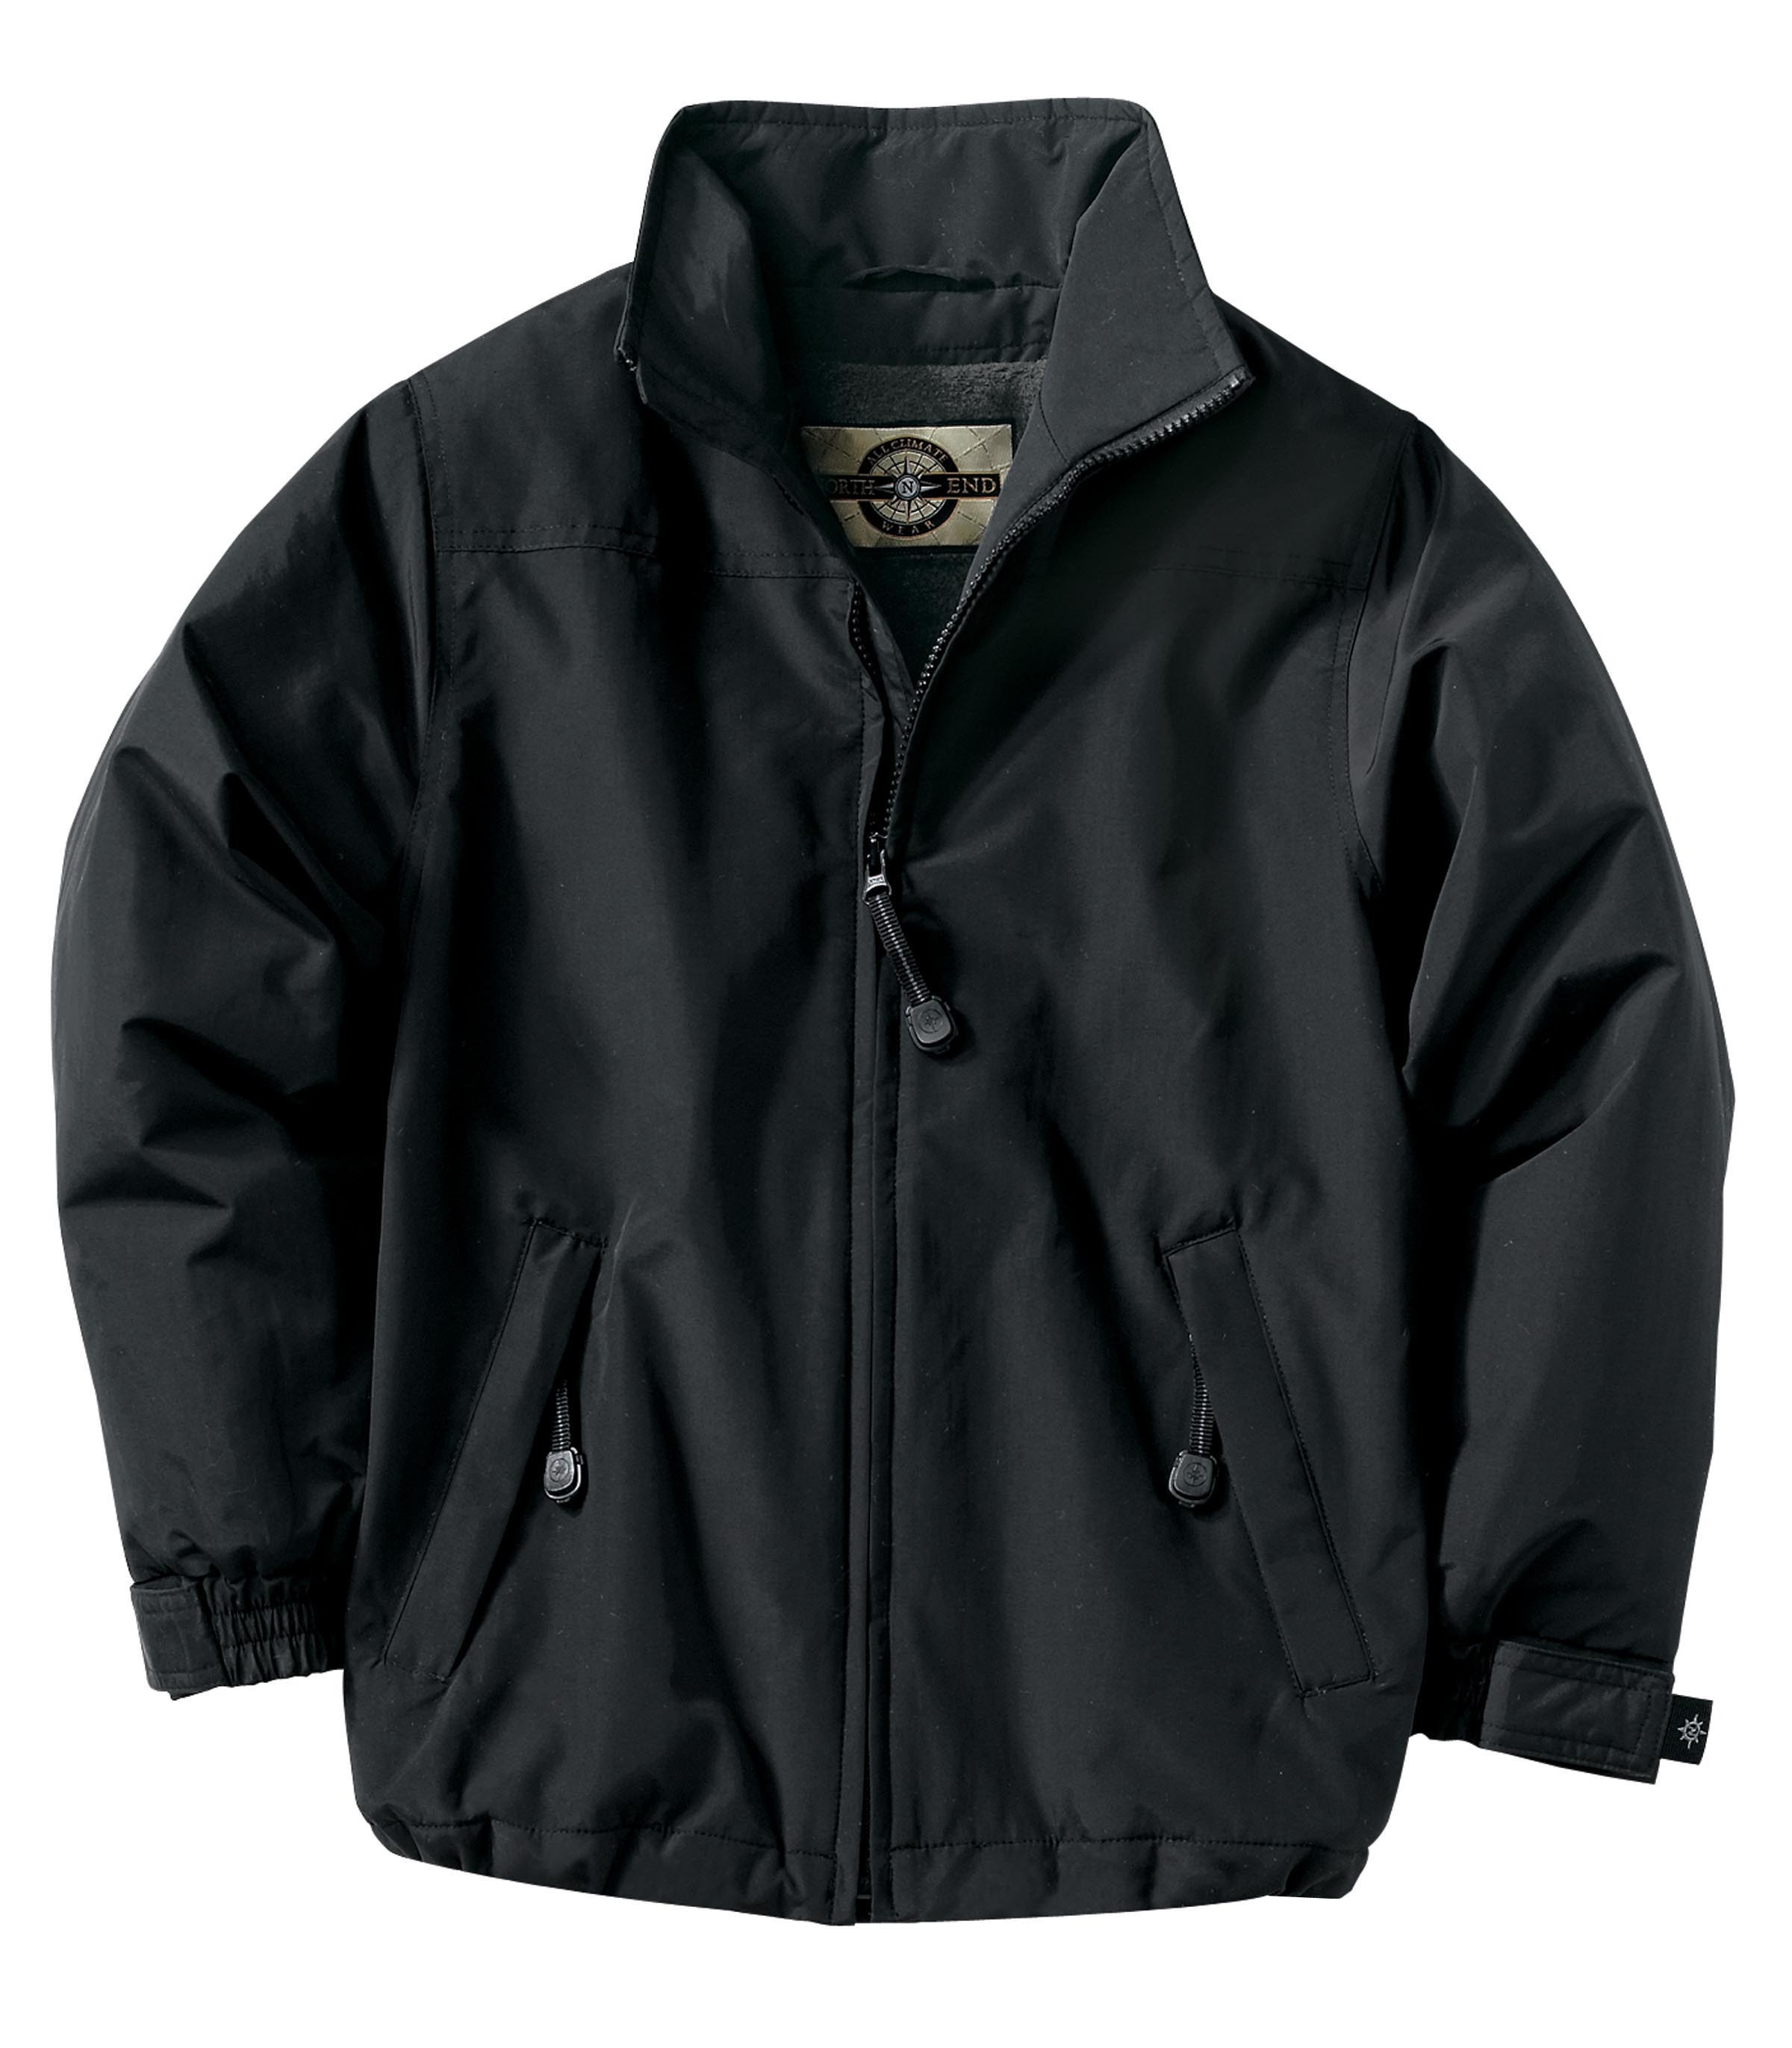 Ash City UTK 2 Warm.Logik 68003 - Youth Insulated Mid-Length Jacket